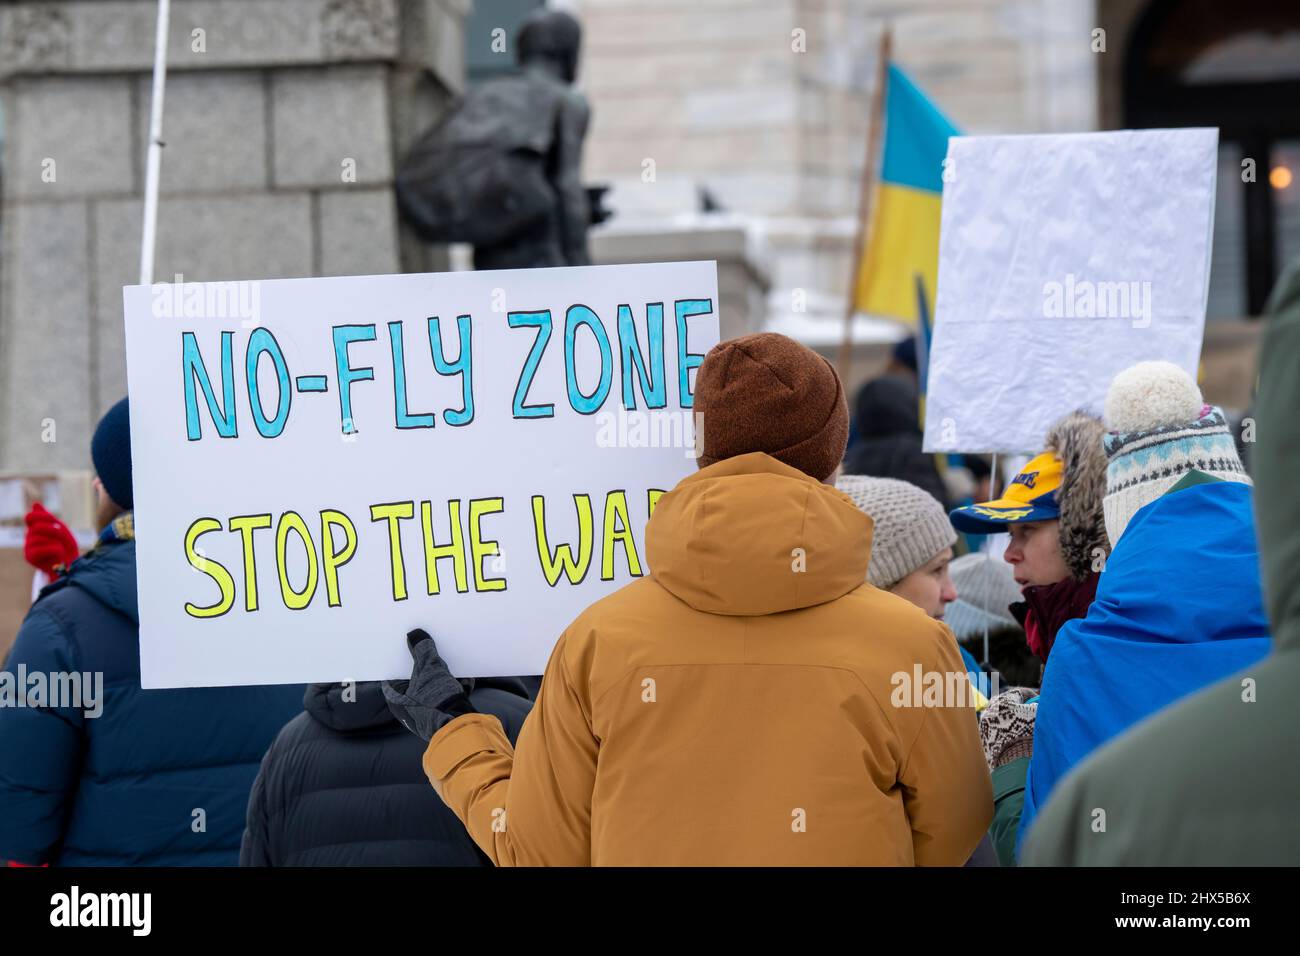 St. Paul, Minnesota. Die Menschen versammeln sich, um das ukrainische Volk und die Souveränität der Ukraine zu unterstützen und den Krieg zu beenden, den Russland gegen sie führt. Stockfoto